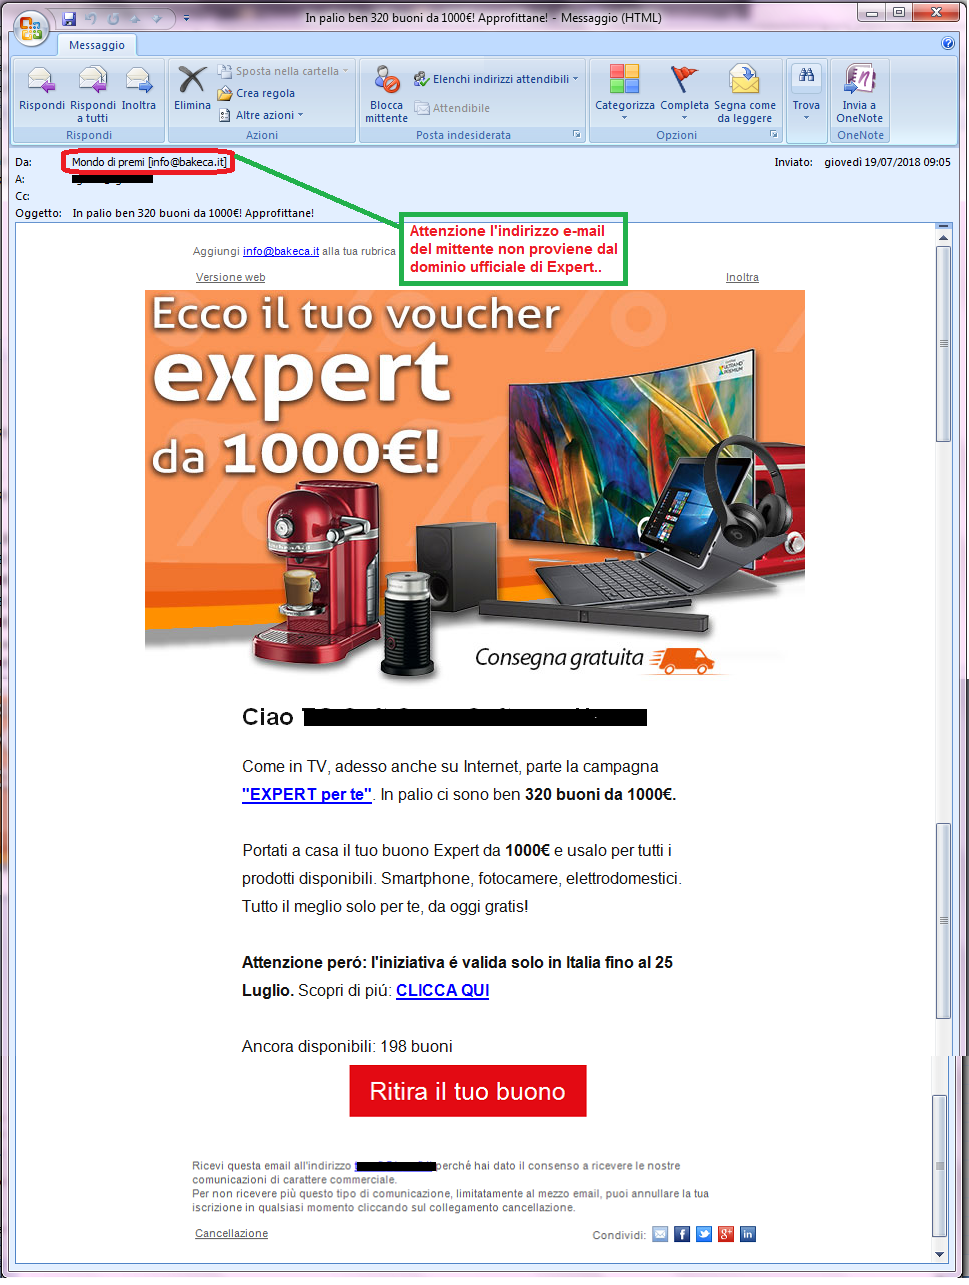 Clicca per ingrandire l'immagine della falsa e-mail di Expert, che offre la possibilità di vincere un buono da 1000€ ma che in realtà è una TRUFFA!